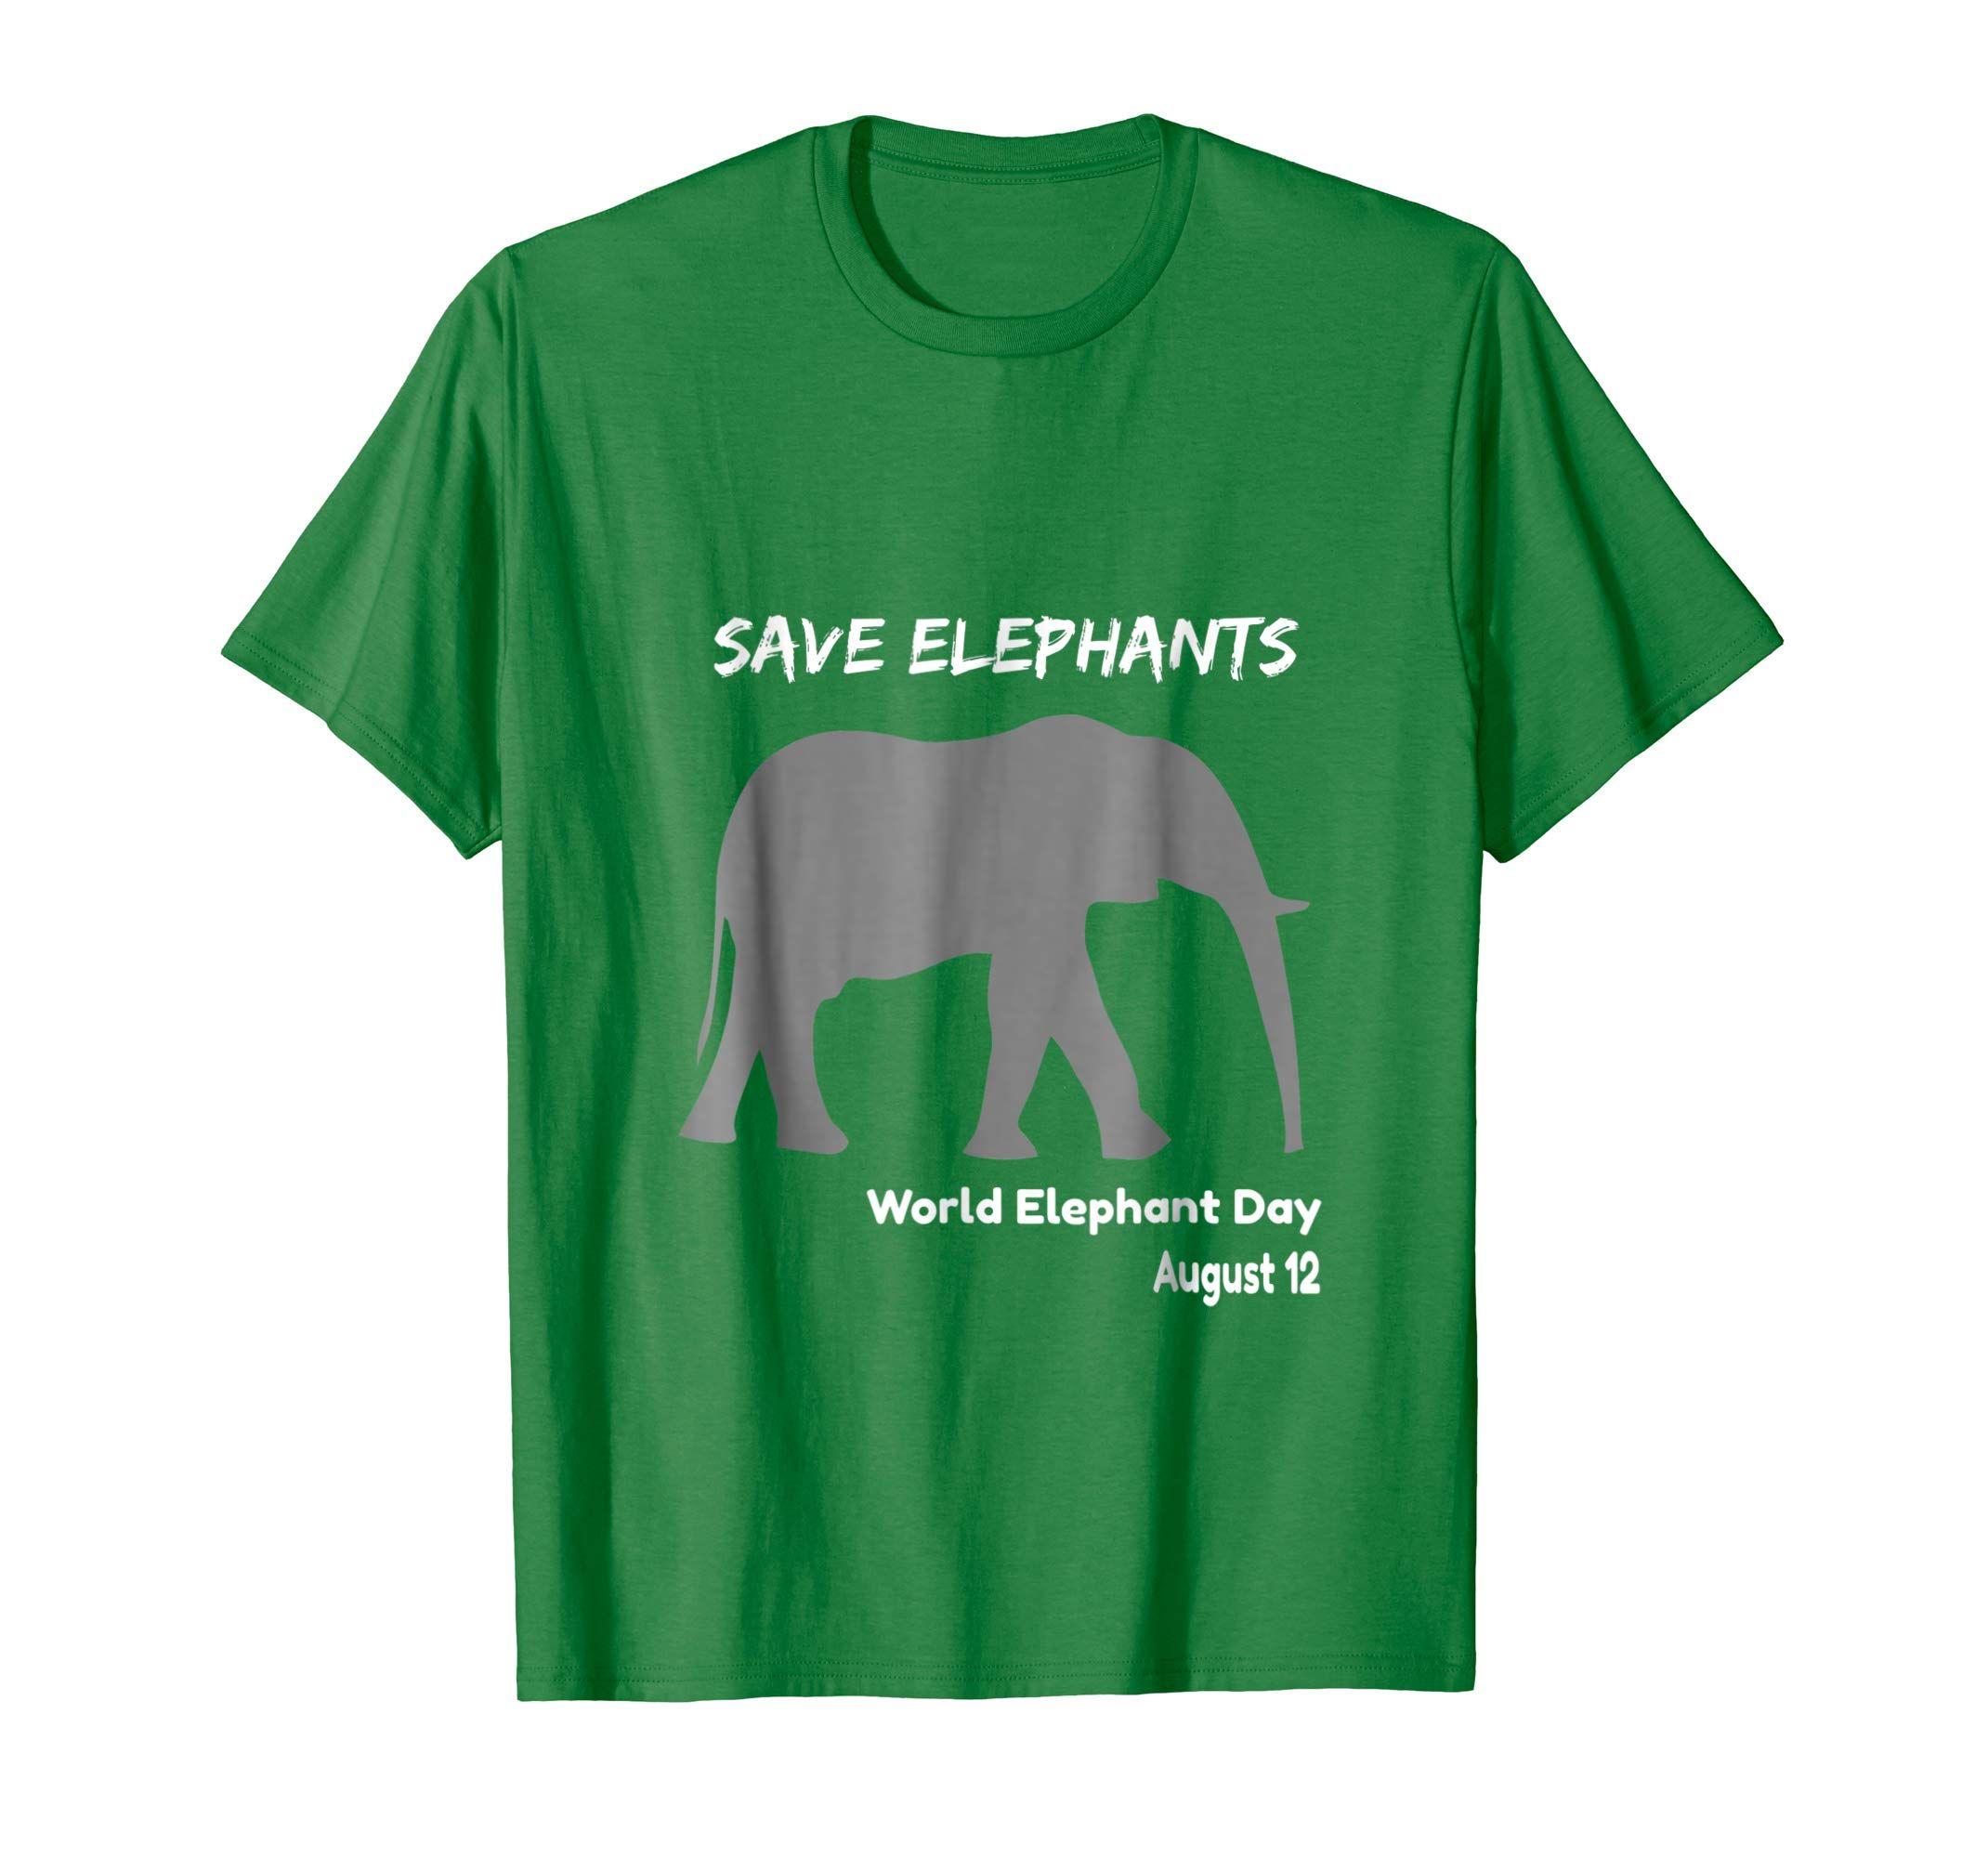 Elephant and World Logo - Amazon.com: Save Elephants World Elephant Day T-Shirt: Clothing